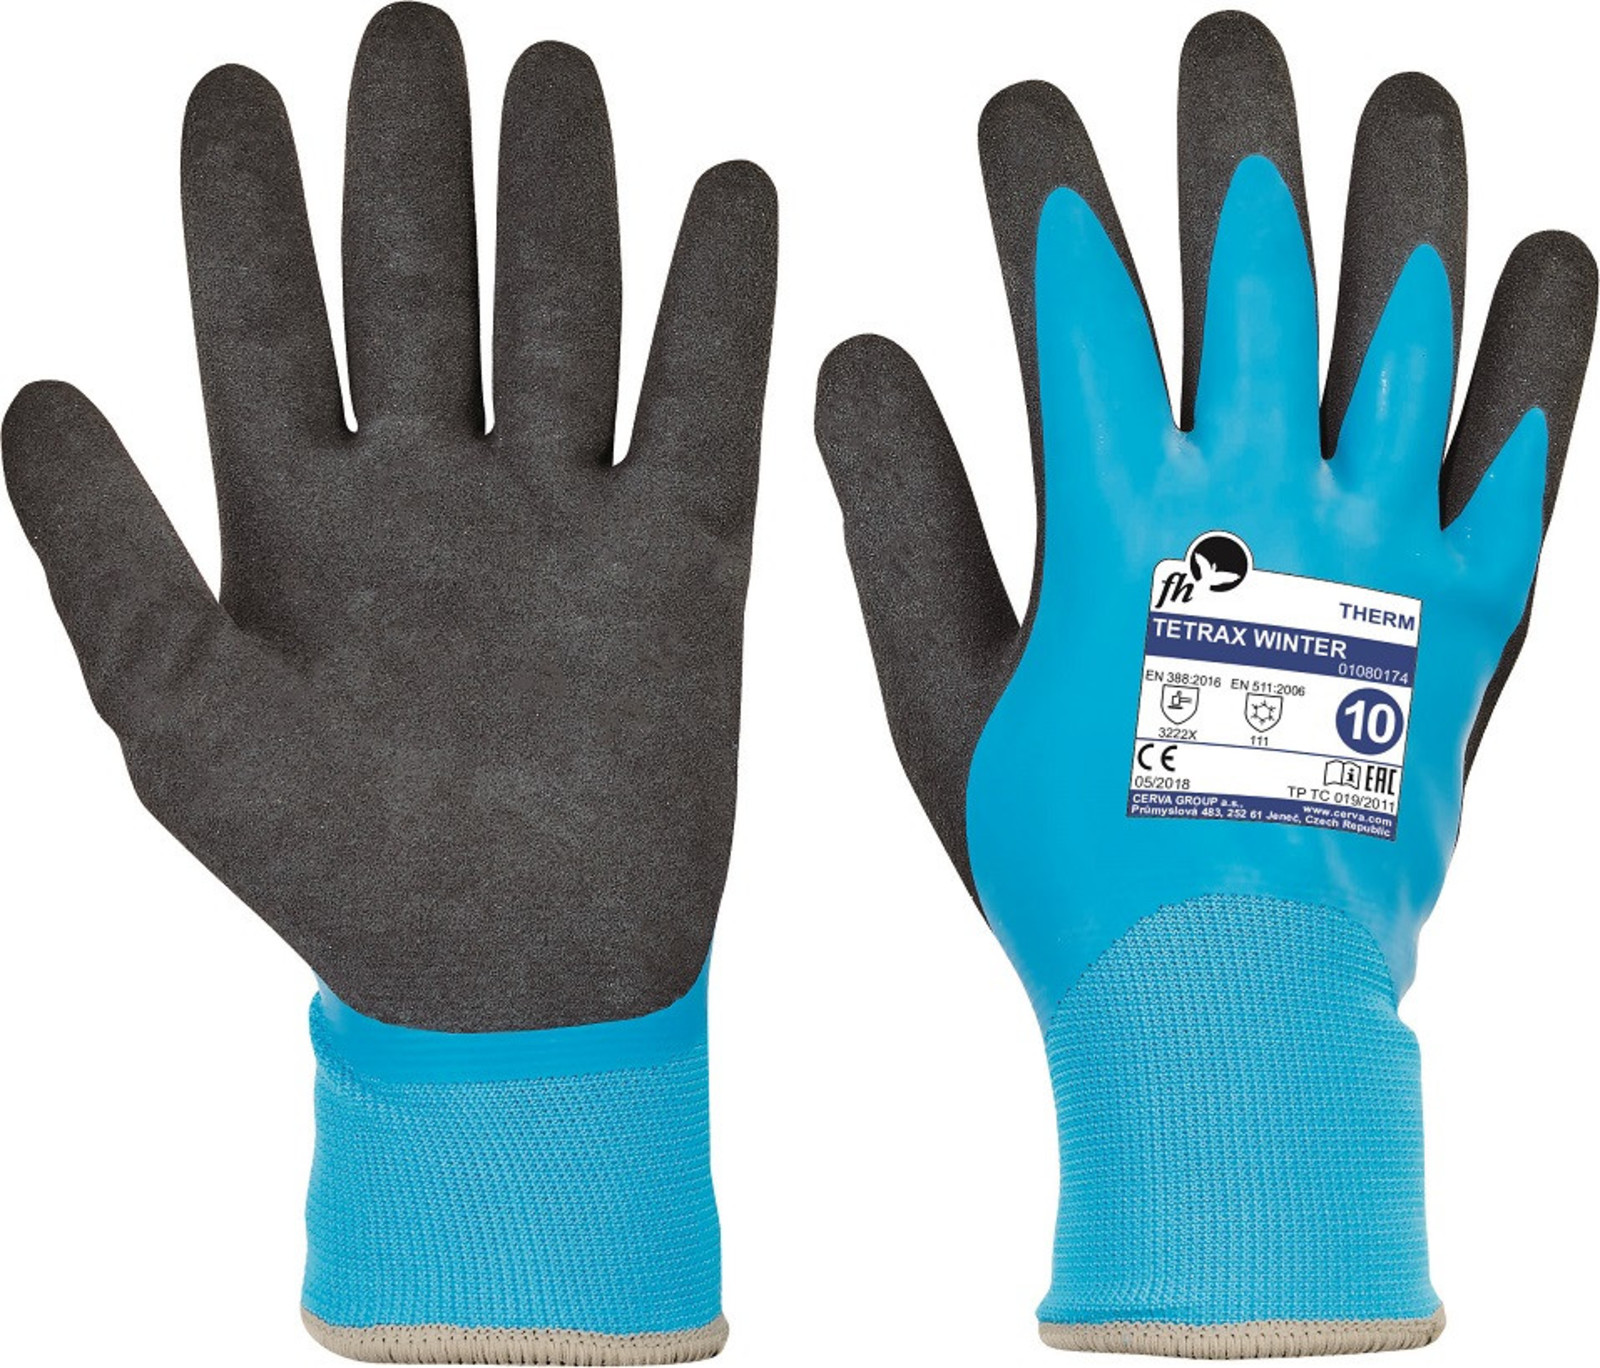 Zateplené rukavice Free Hand Tetrax Winter - veľkosť: 8/M, farba: modrá/čierna